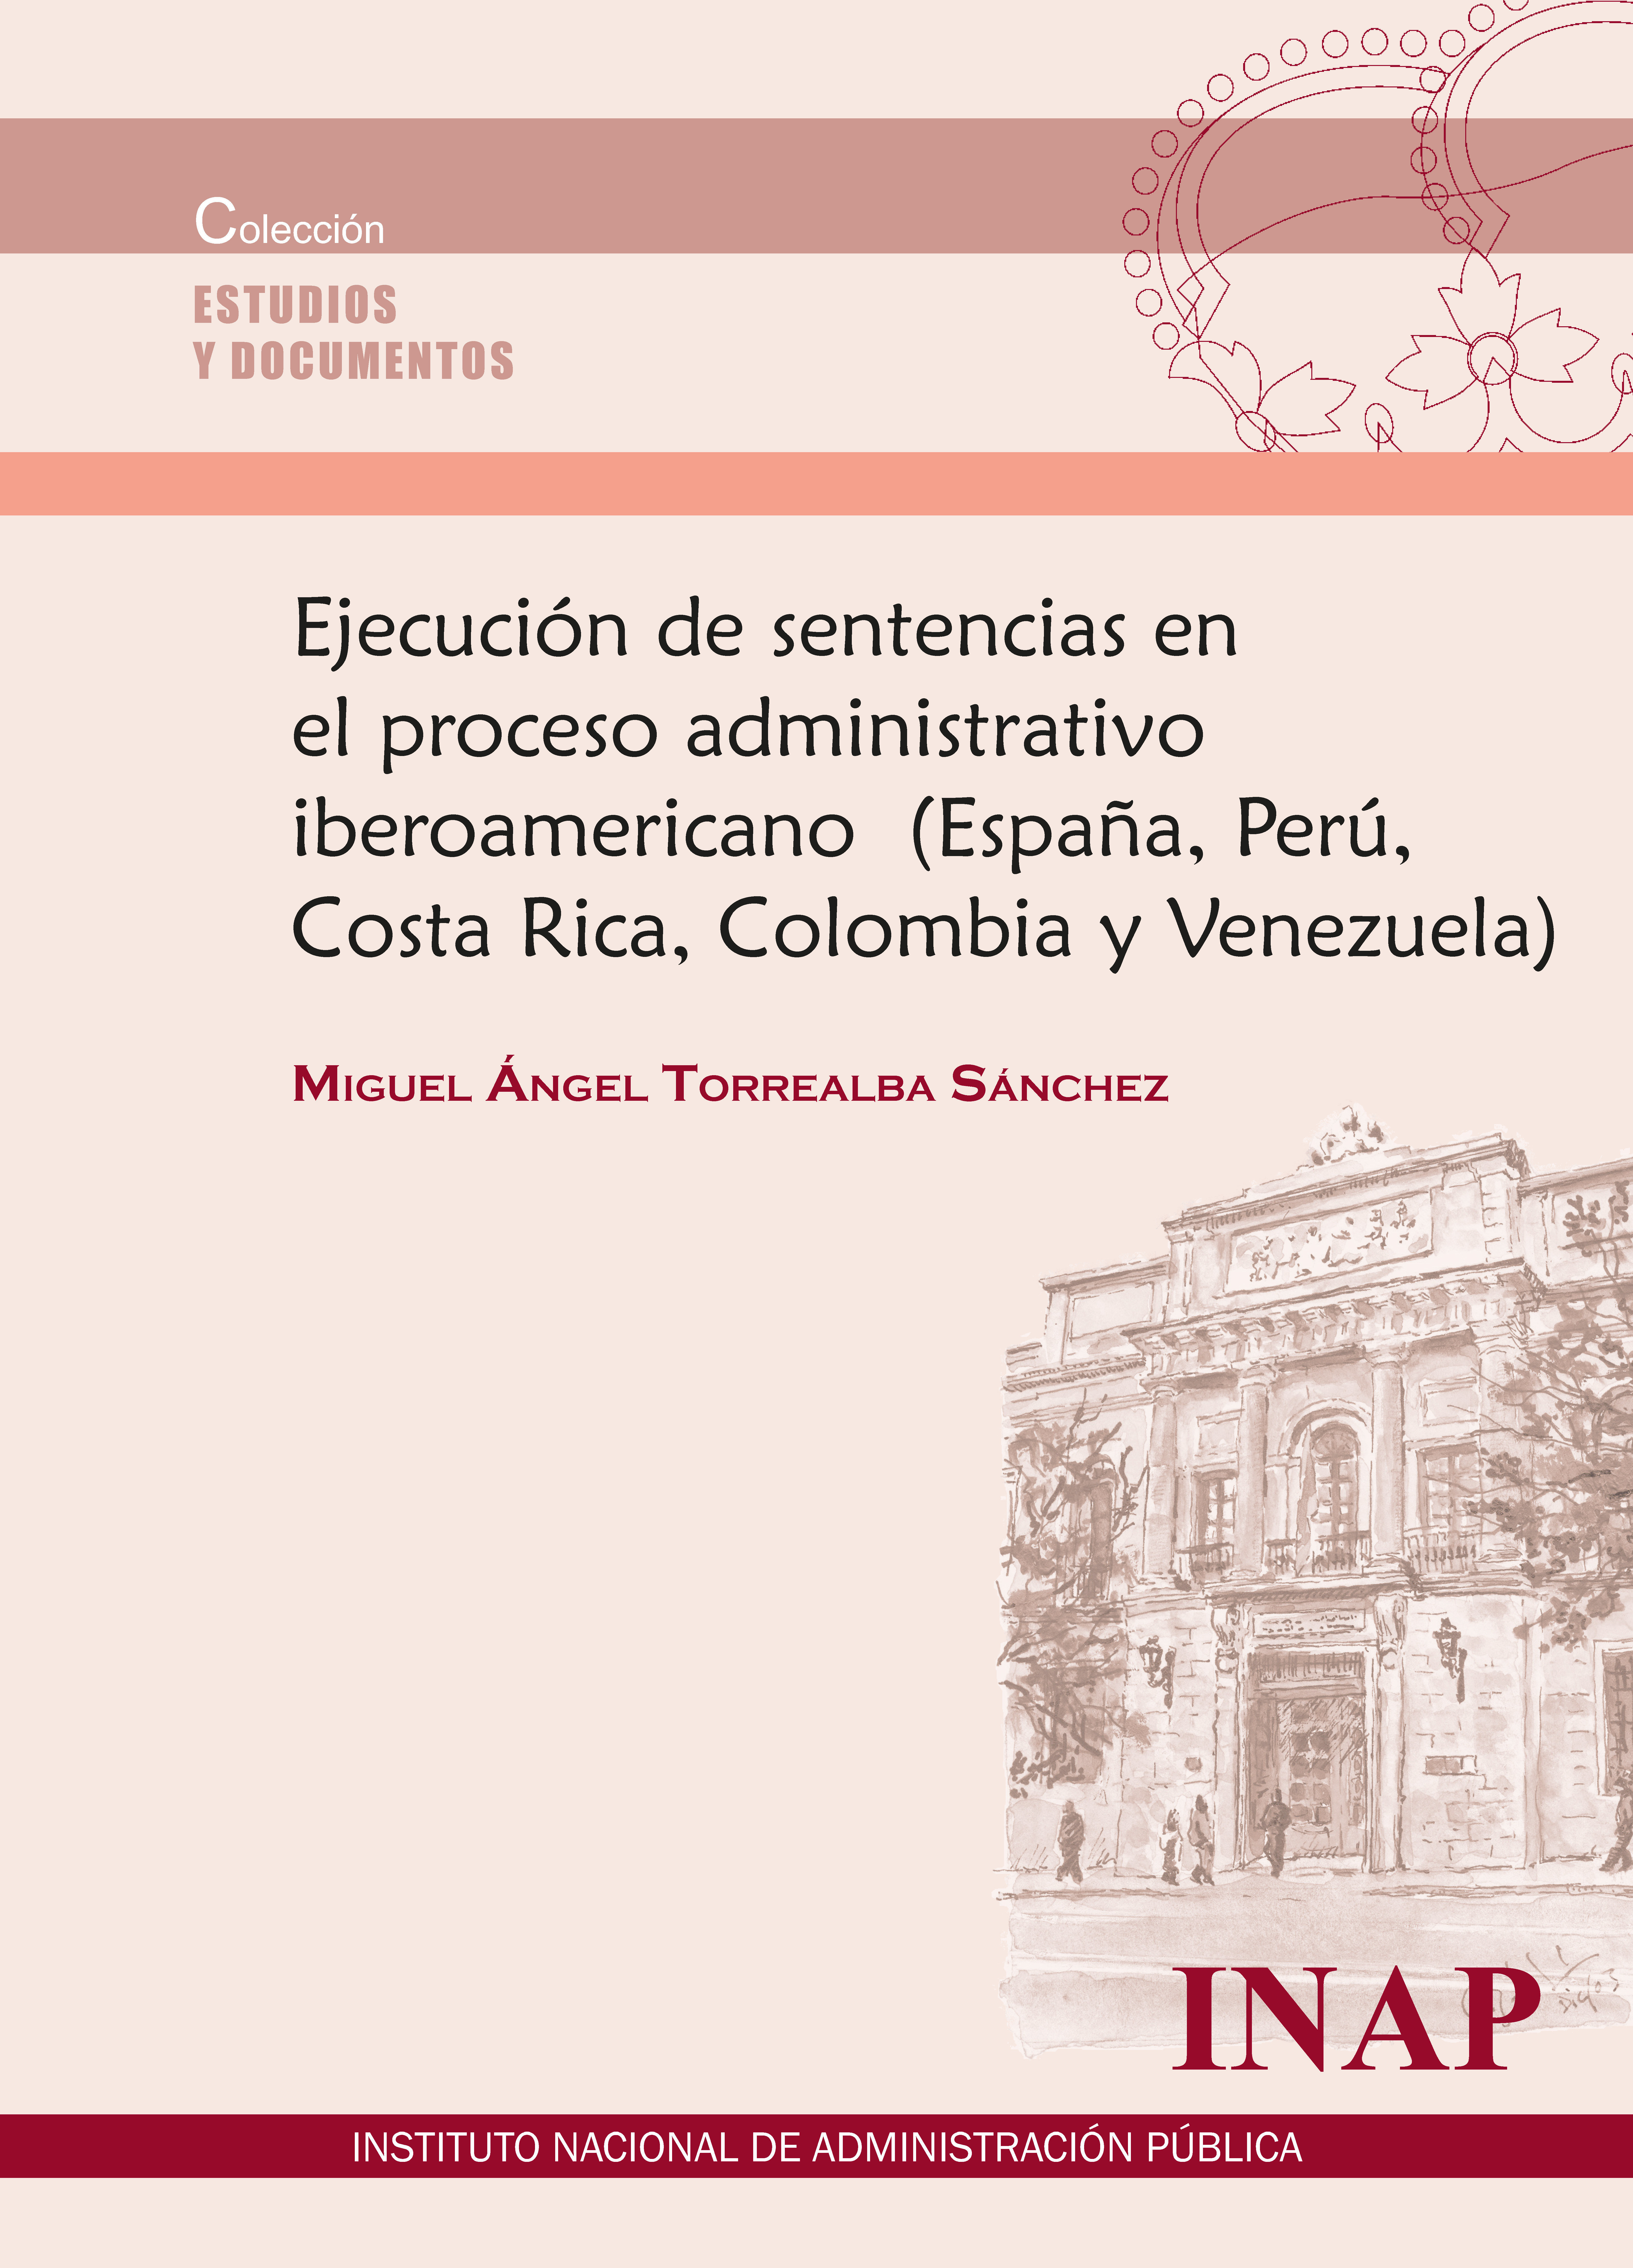 Ejecución de sentencias en el proceso administativo iberoamenicano (España, Perú, Costa Rica, Colombia y Venezuela) 